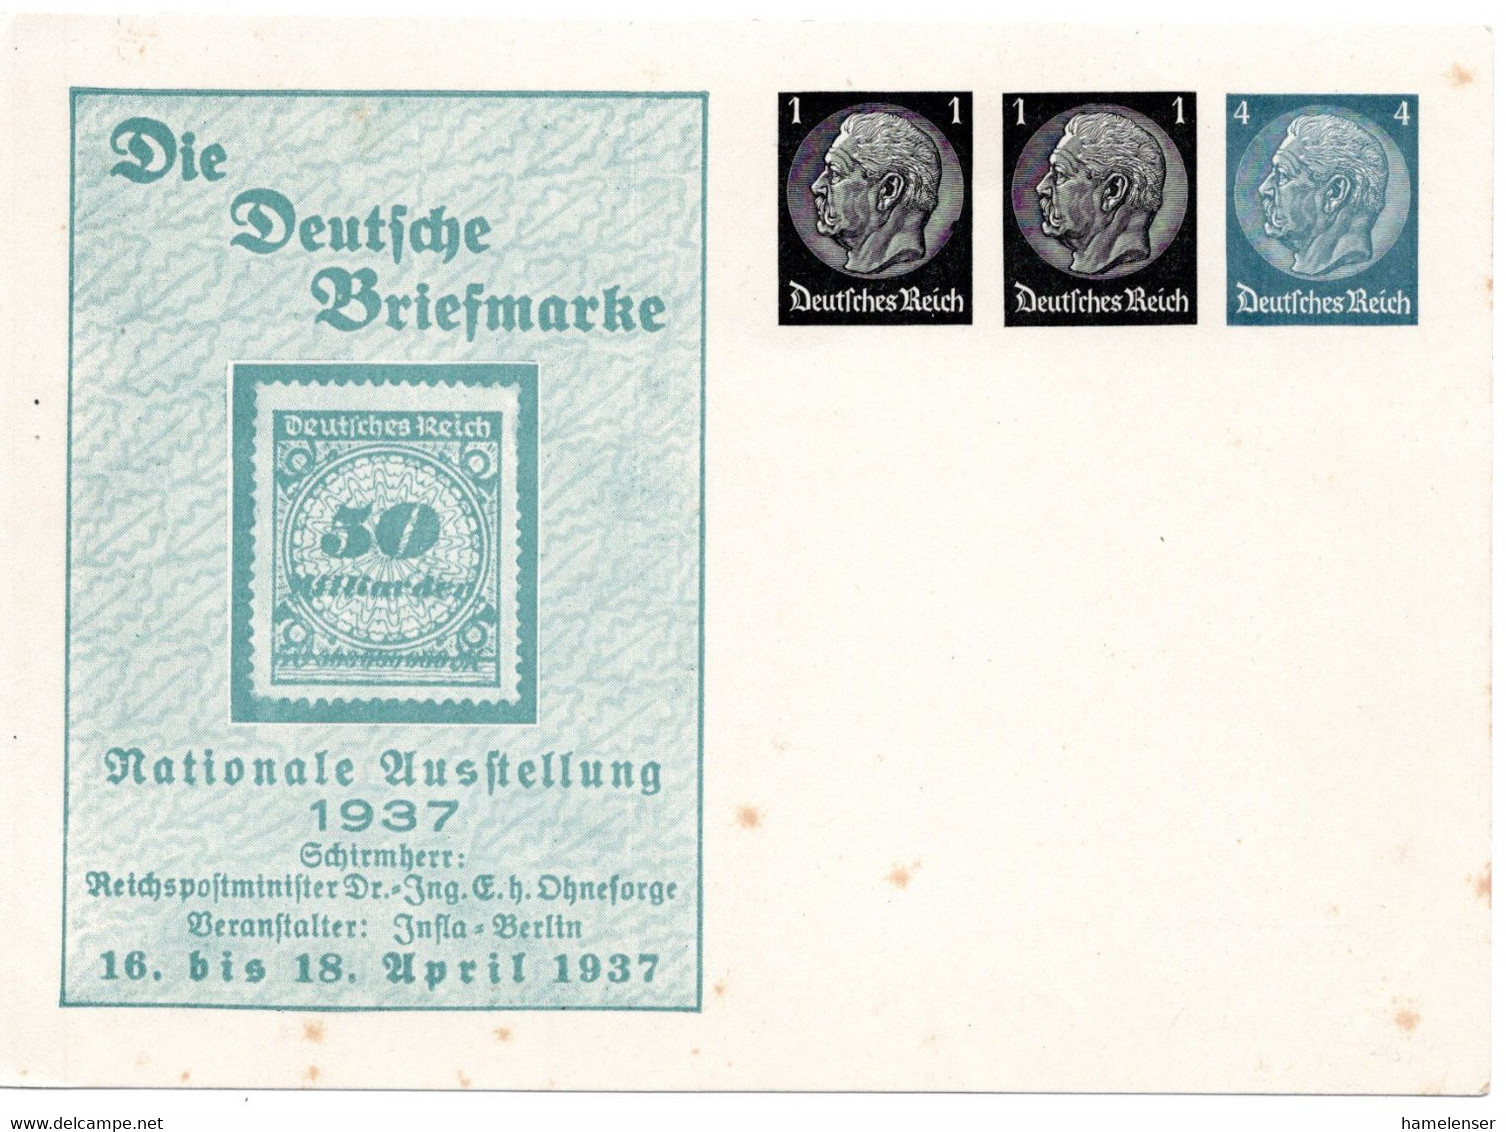 56183 - Deutsches Reich - 1937 - 1&1&4Pfg Hindenburg PGAKte "Die Deutsche Briefmarke", Ungebraucht, Etw Stockig - Francobolli Su Francobolli